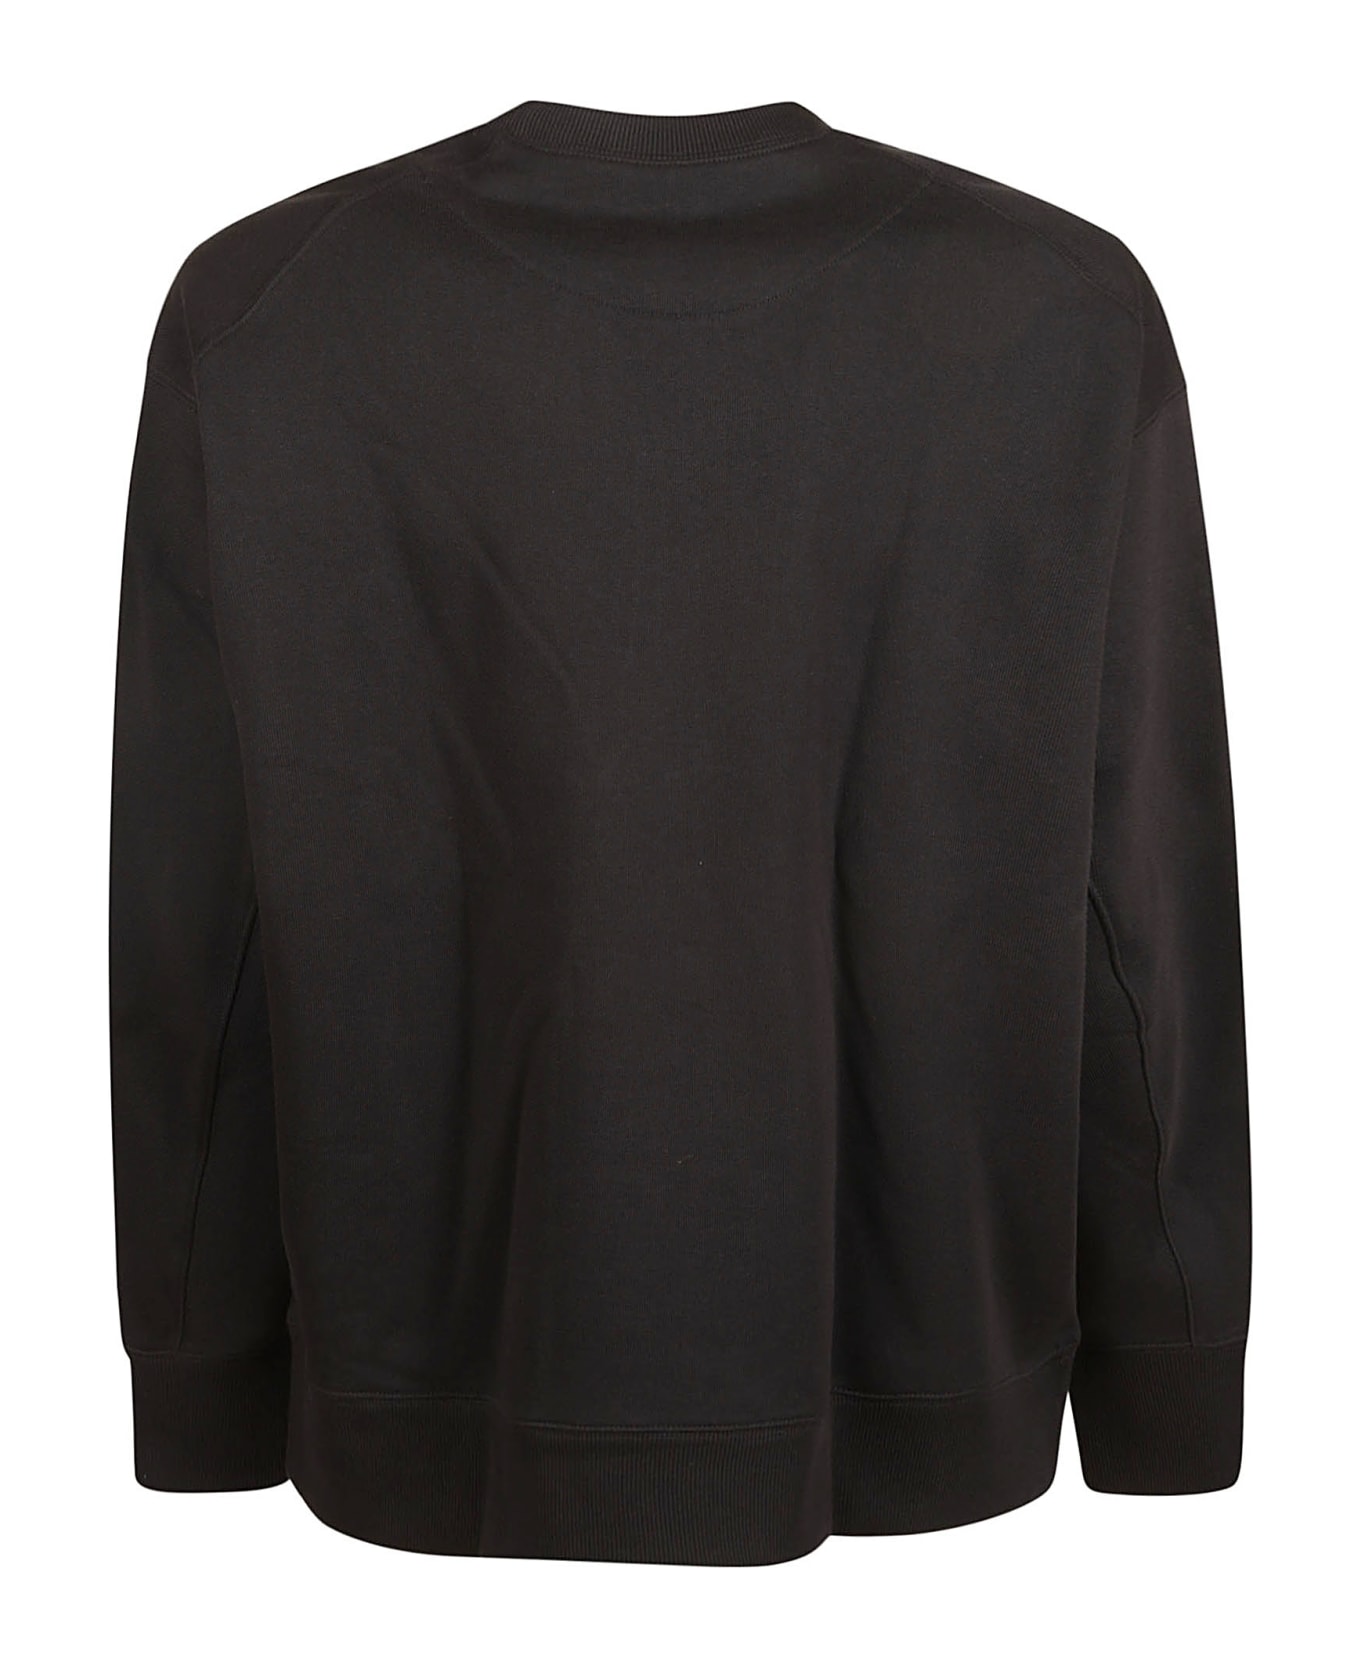 Y-3 Gfx Crewneck Sweatshirt - Black